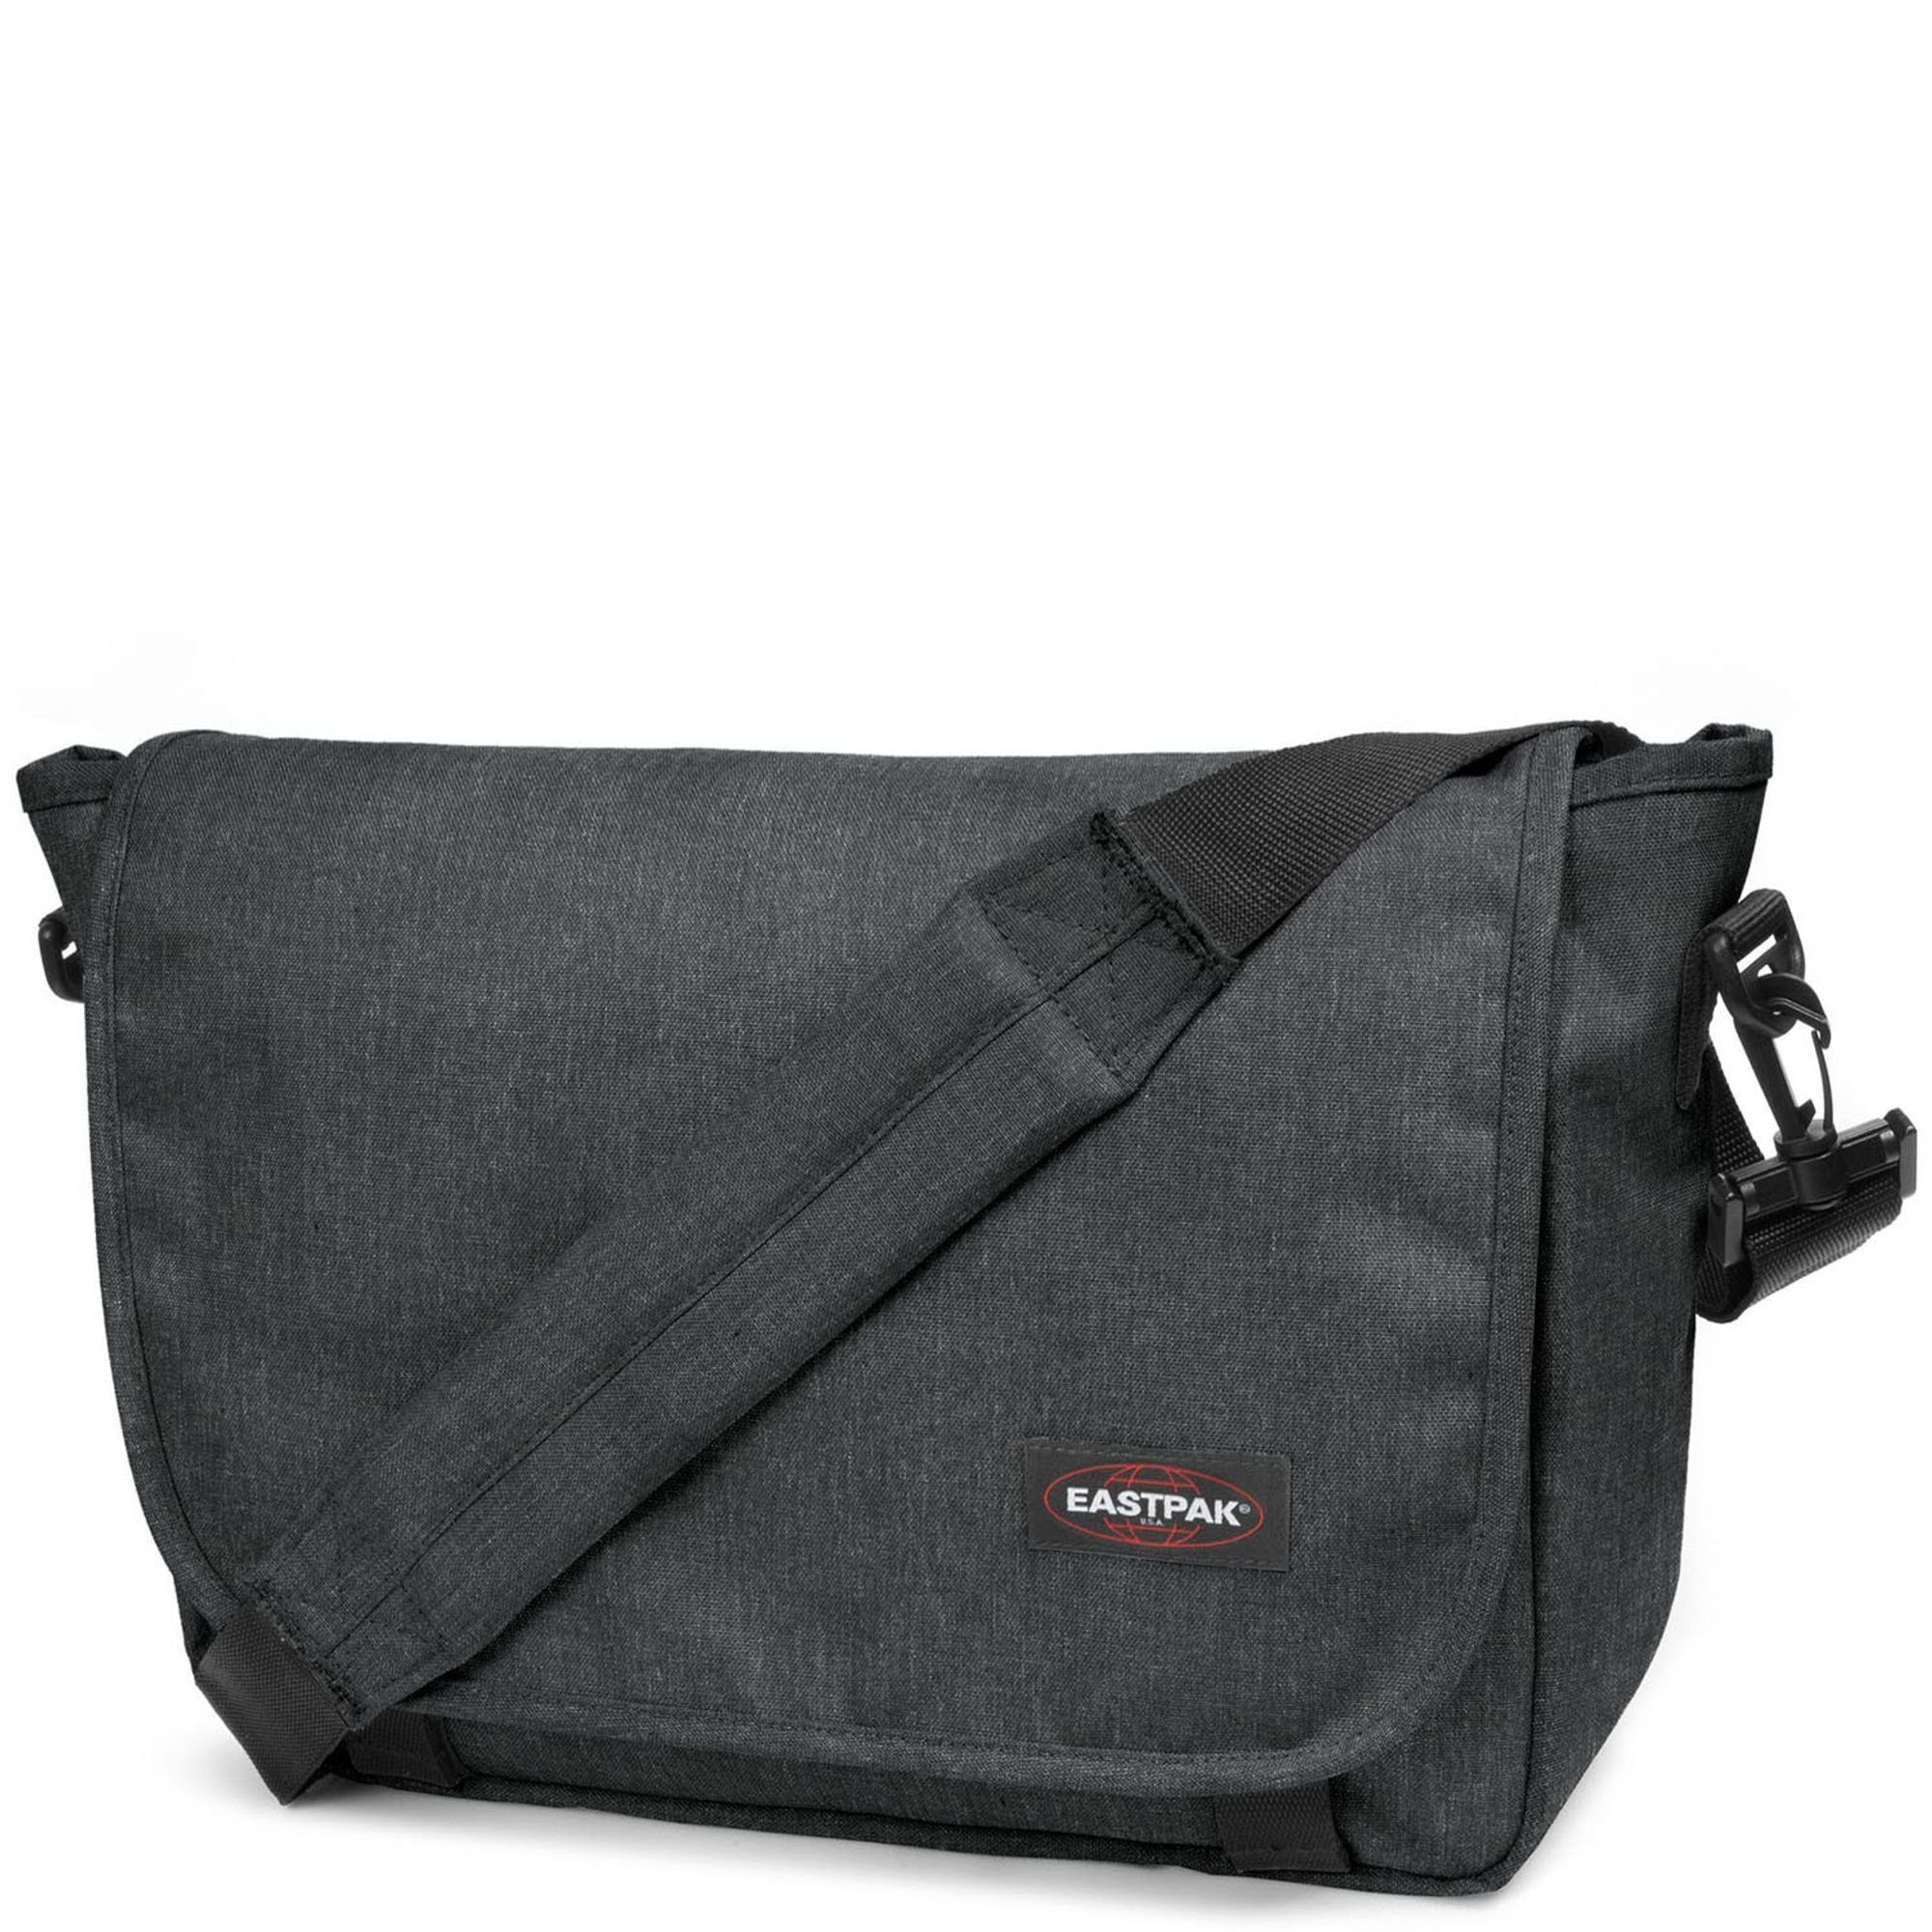 Eastpak Messenger Bag JR, Nylon black denim